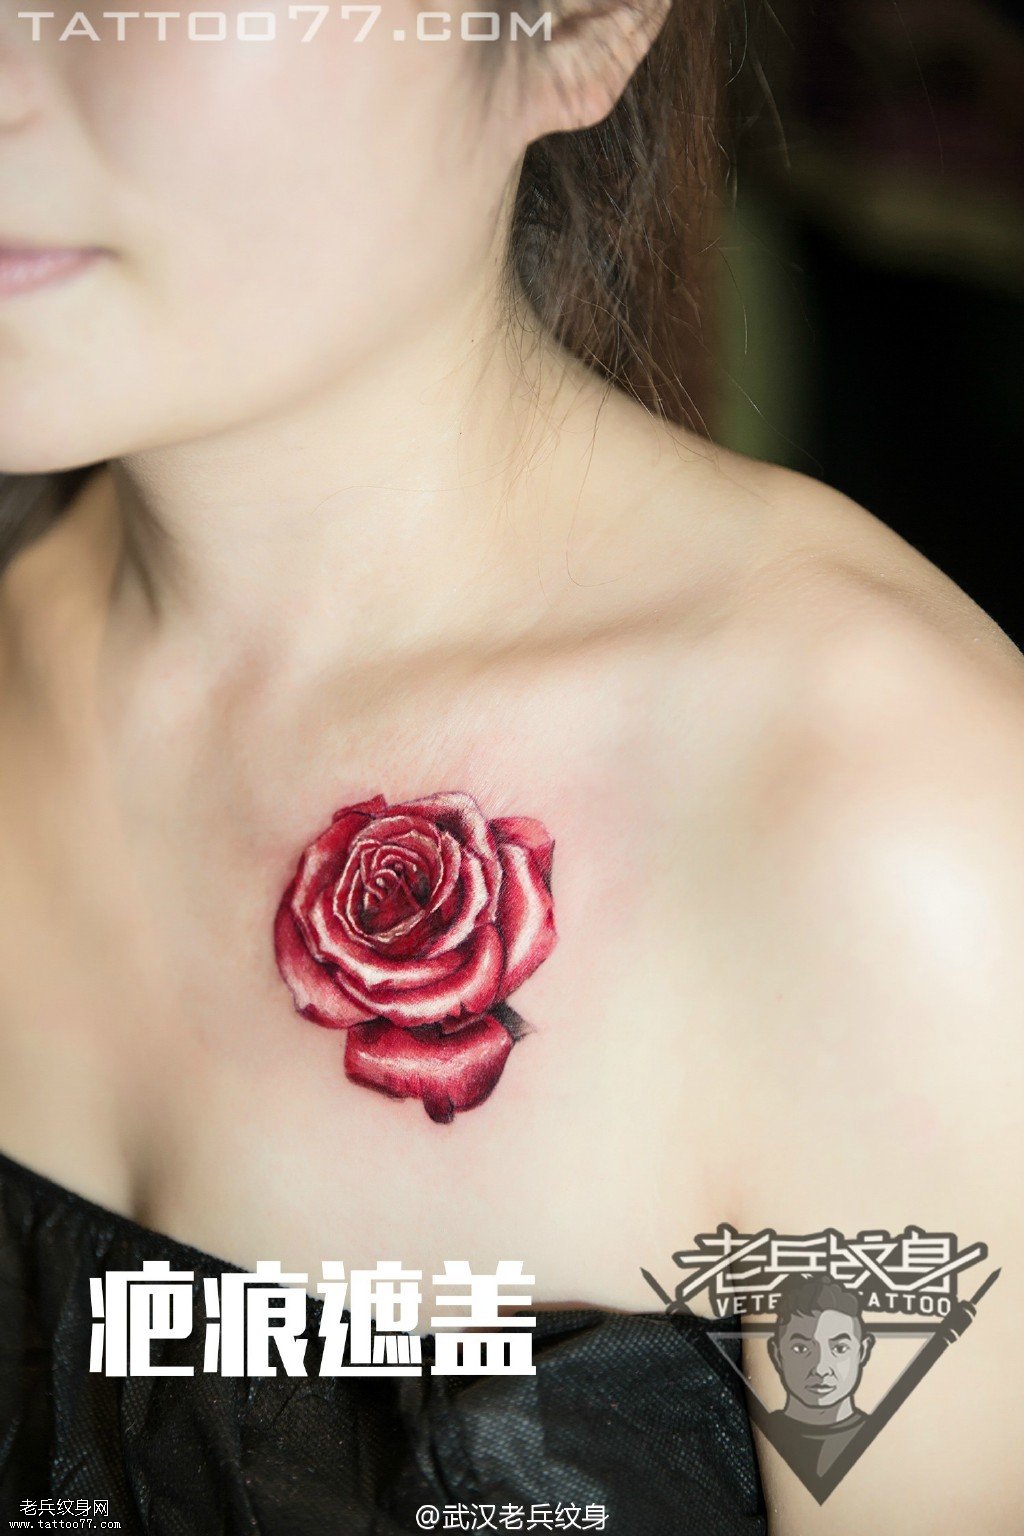 美女胸部玫瑰花纹身图案作品遮盖疤痕